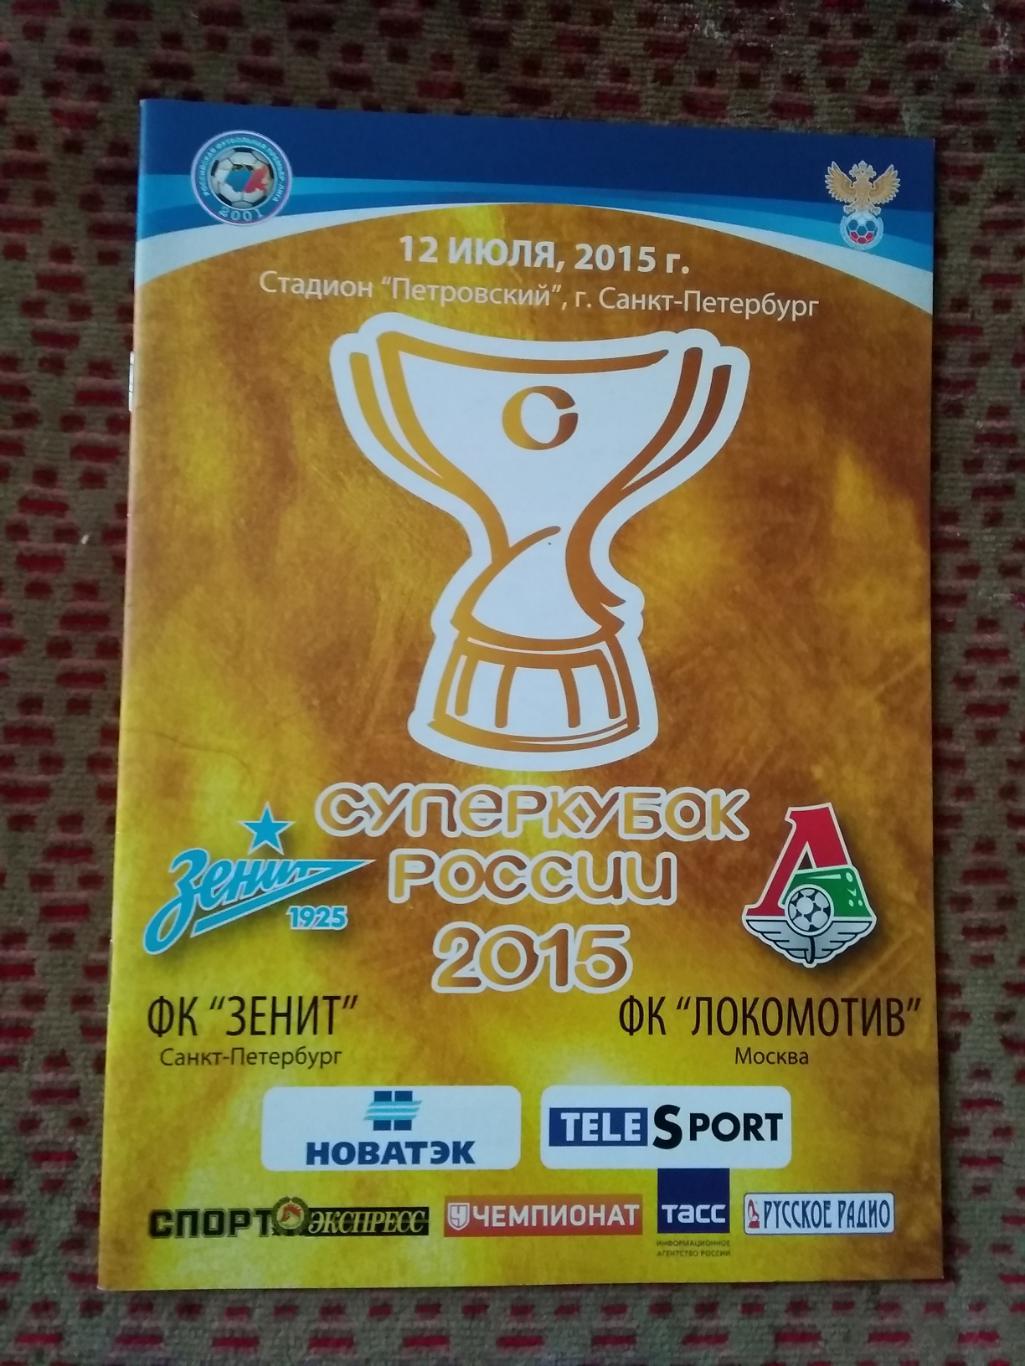 Зенит (Санкт-Петербург) - Локомотив (Москва).Суперкубок России 2015 г.